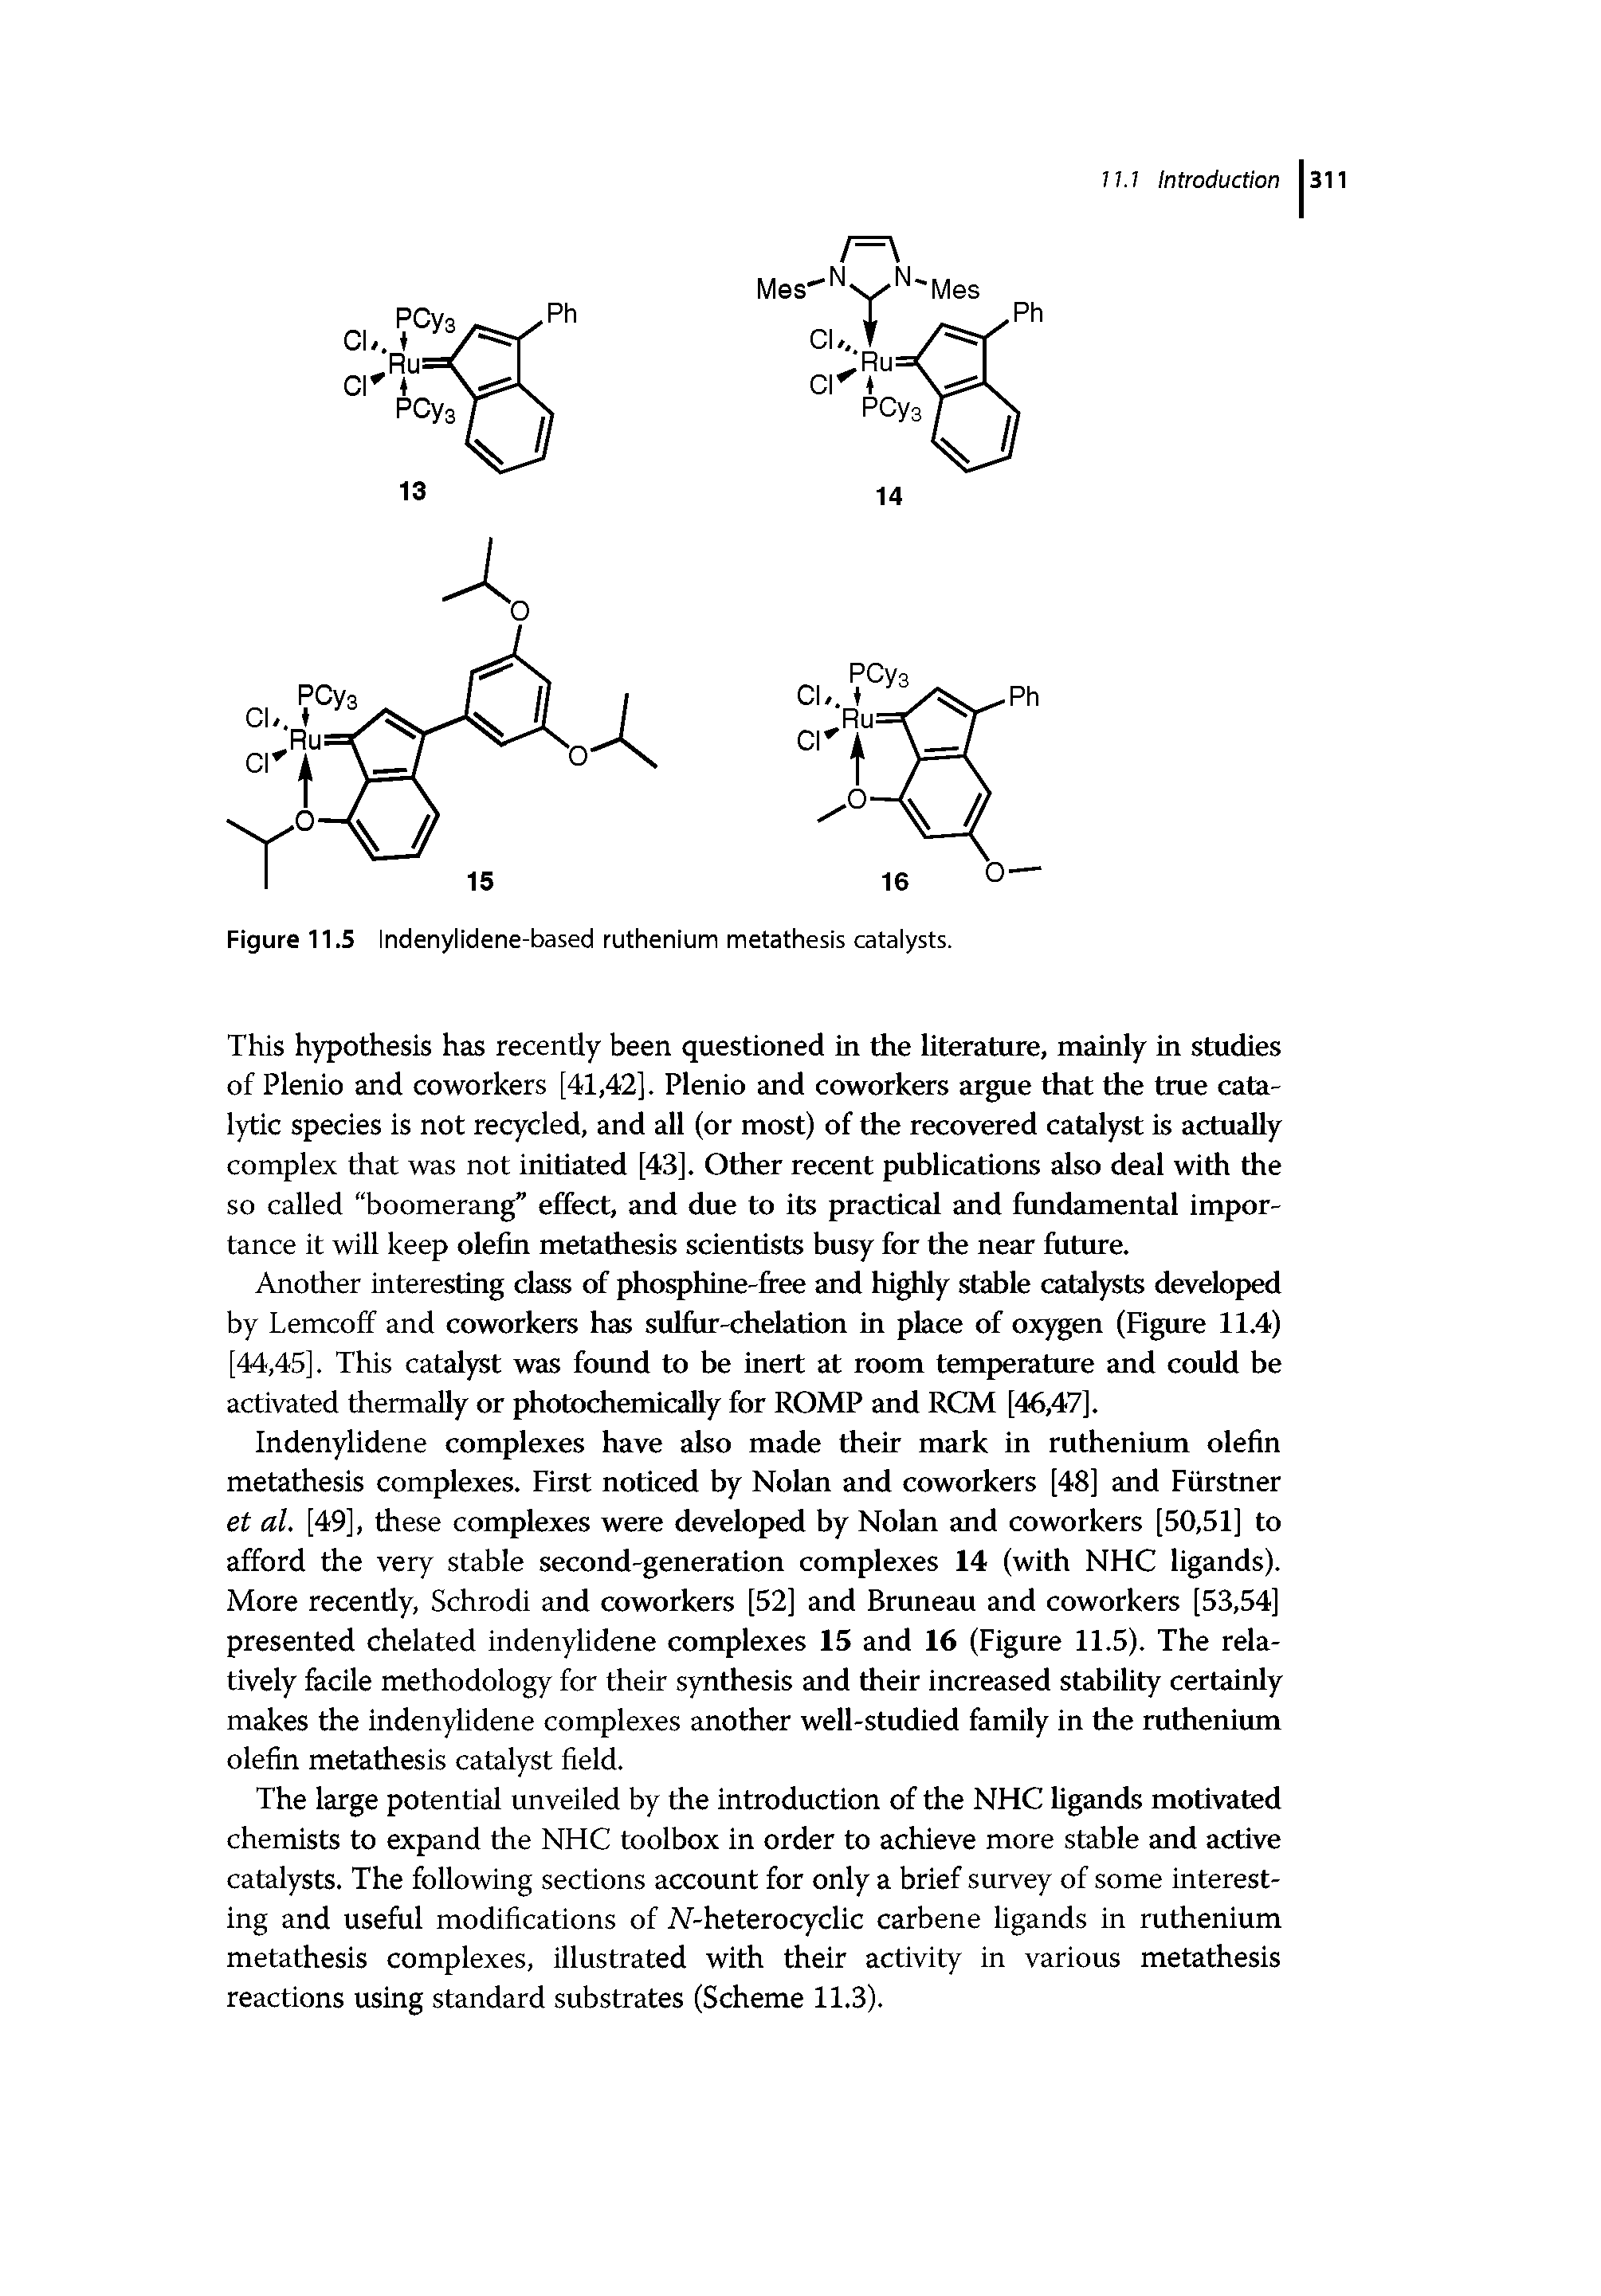 Figure 11.5 Indenylidene-based ruthenium metathesis catalysts.